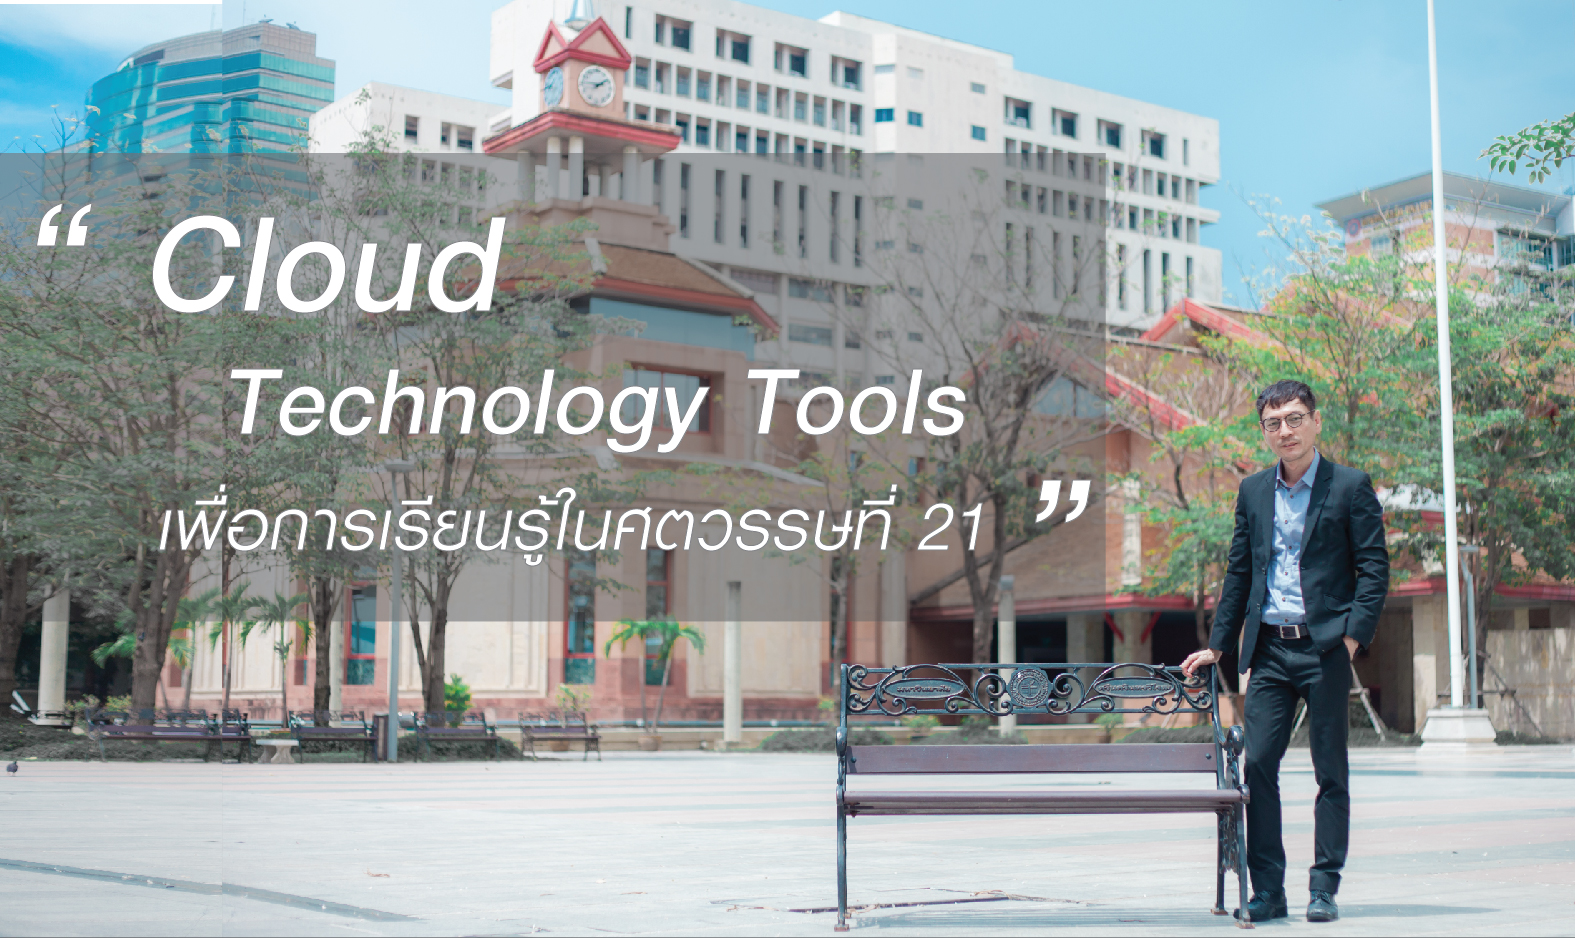 Cloud Technology Tools เพื่อการเรียนรู้ในศตวรรษที่ 21 | Cloud Technology Tools for 21st Century Learning SWU003